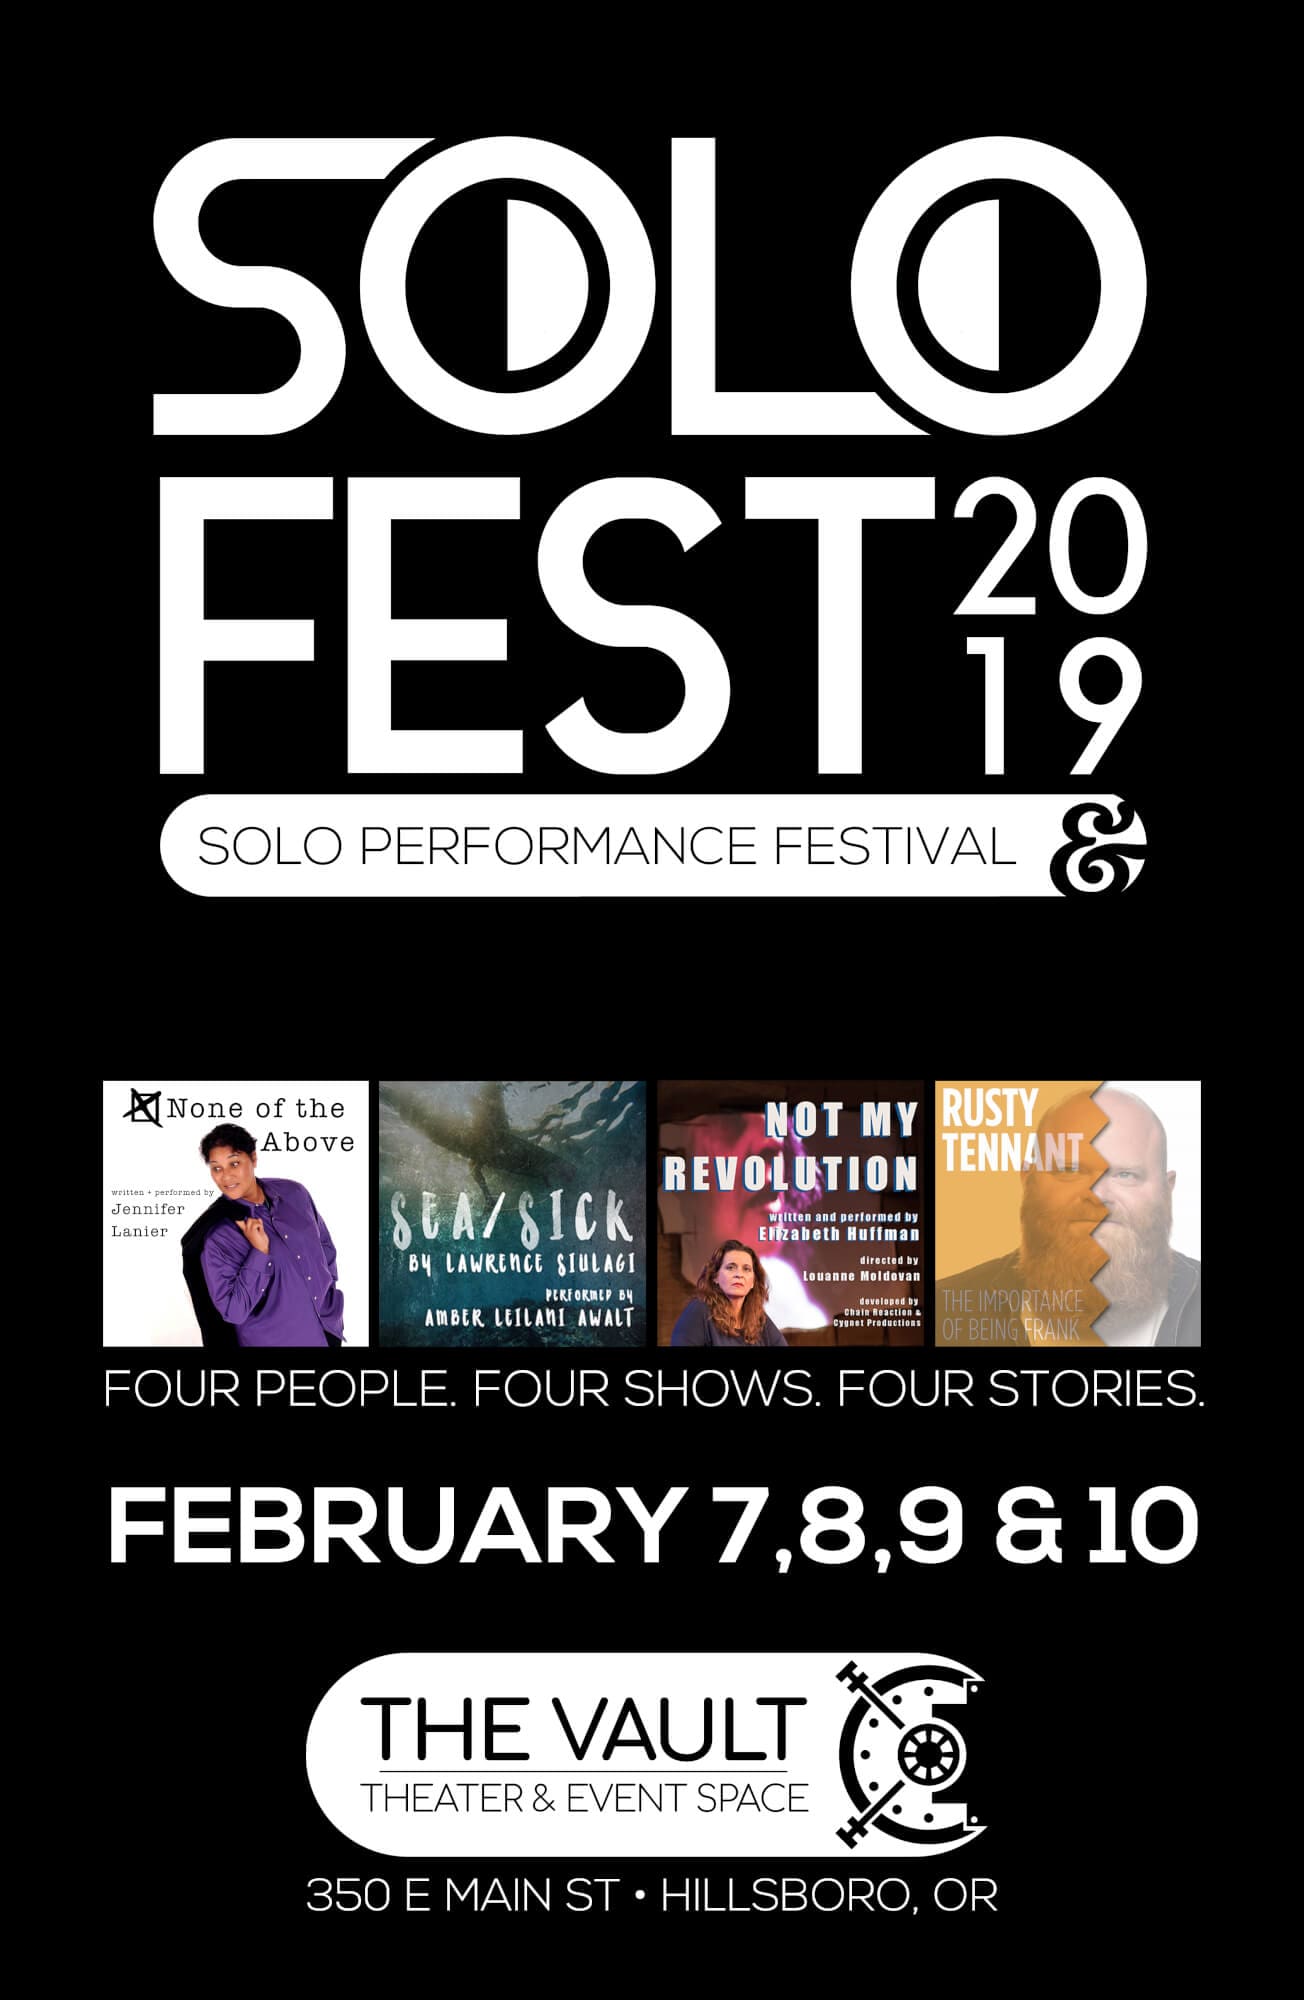 SOLO Fest 19_11x17 Poster